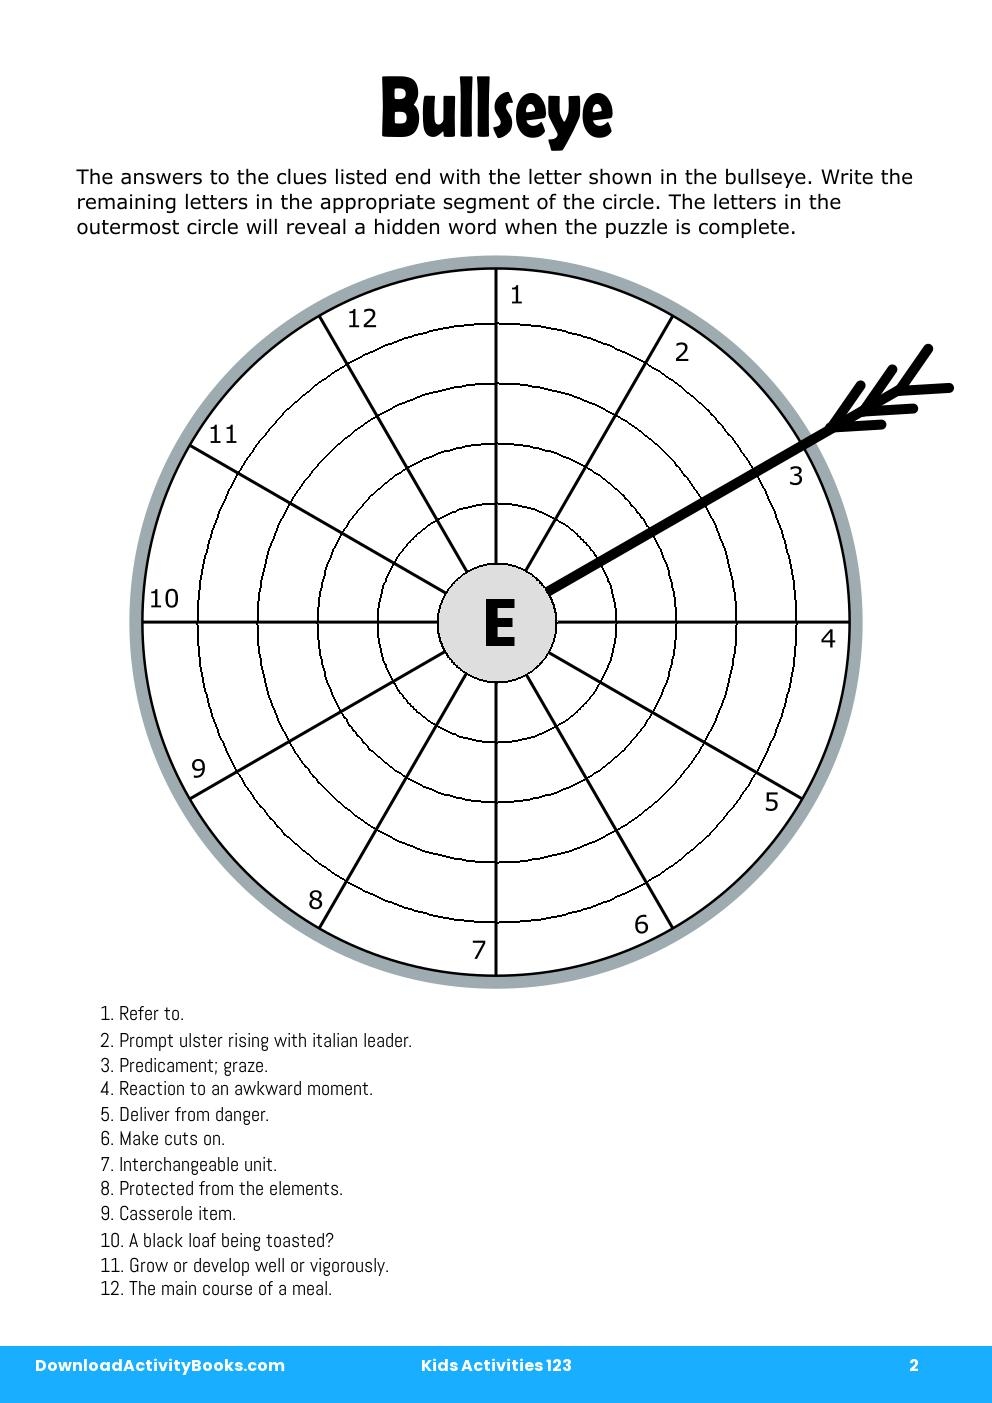 Bullseye in Kids Activities 123